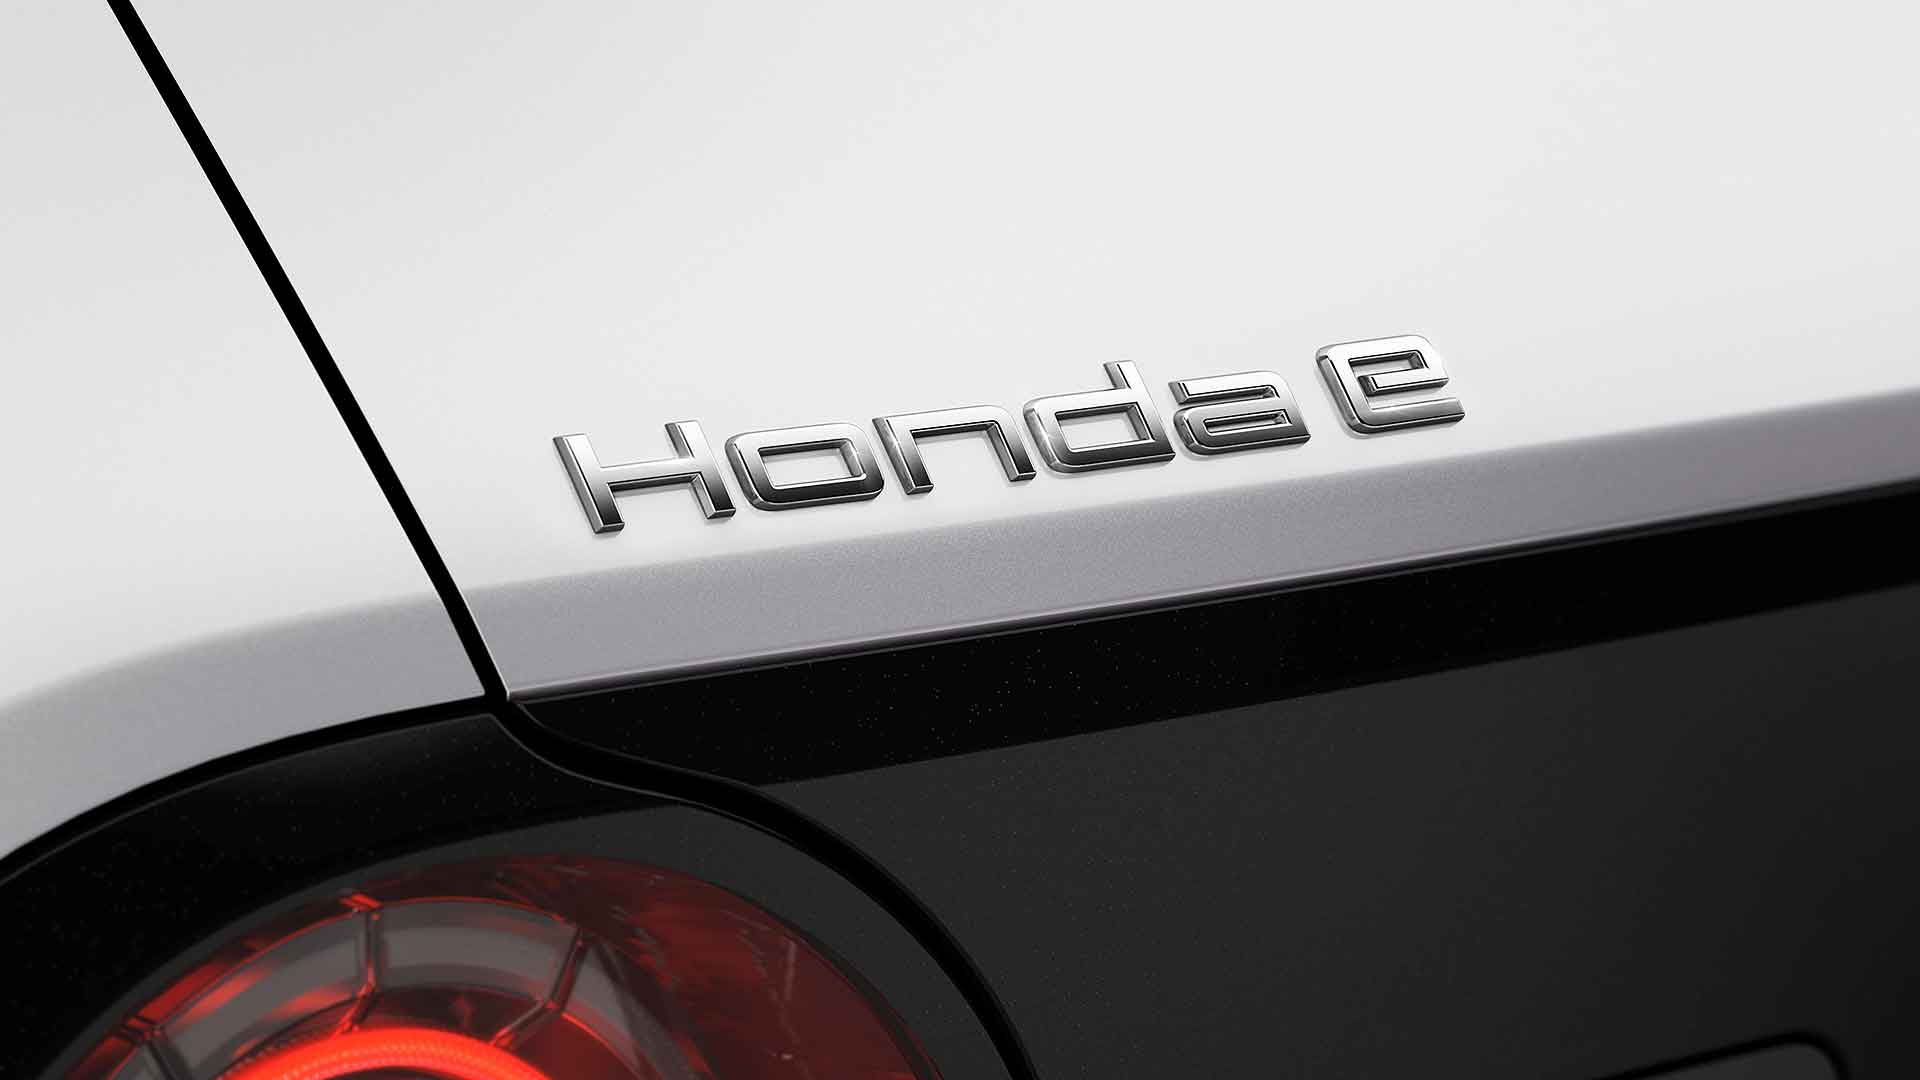 Honda e model badge